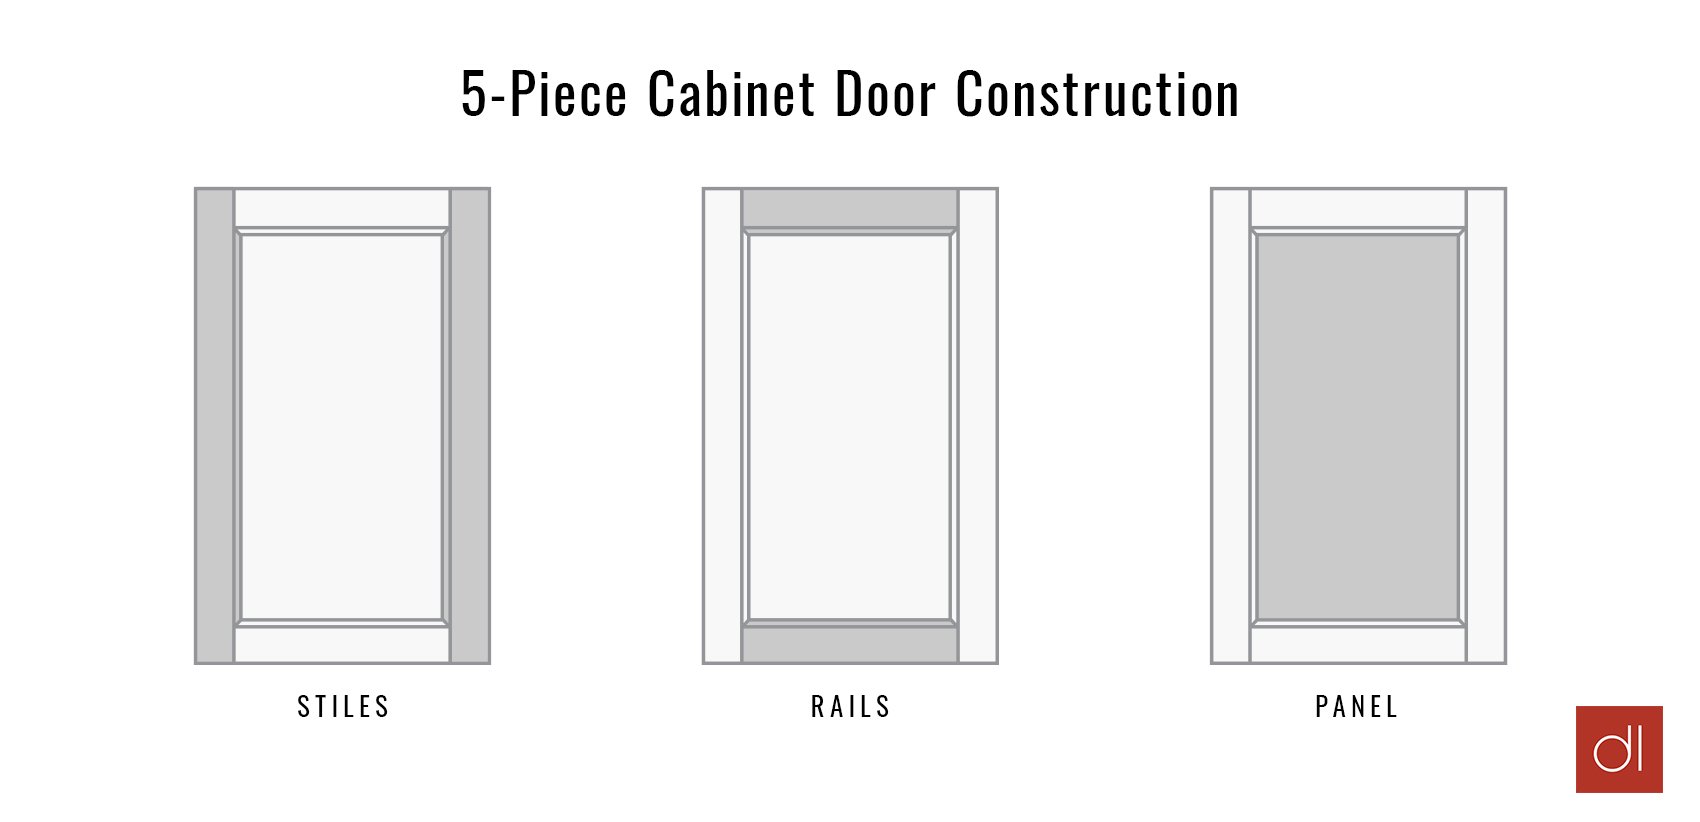 5-piece cabinet door construction